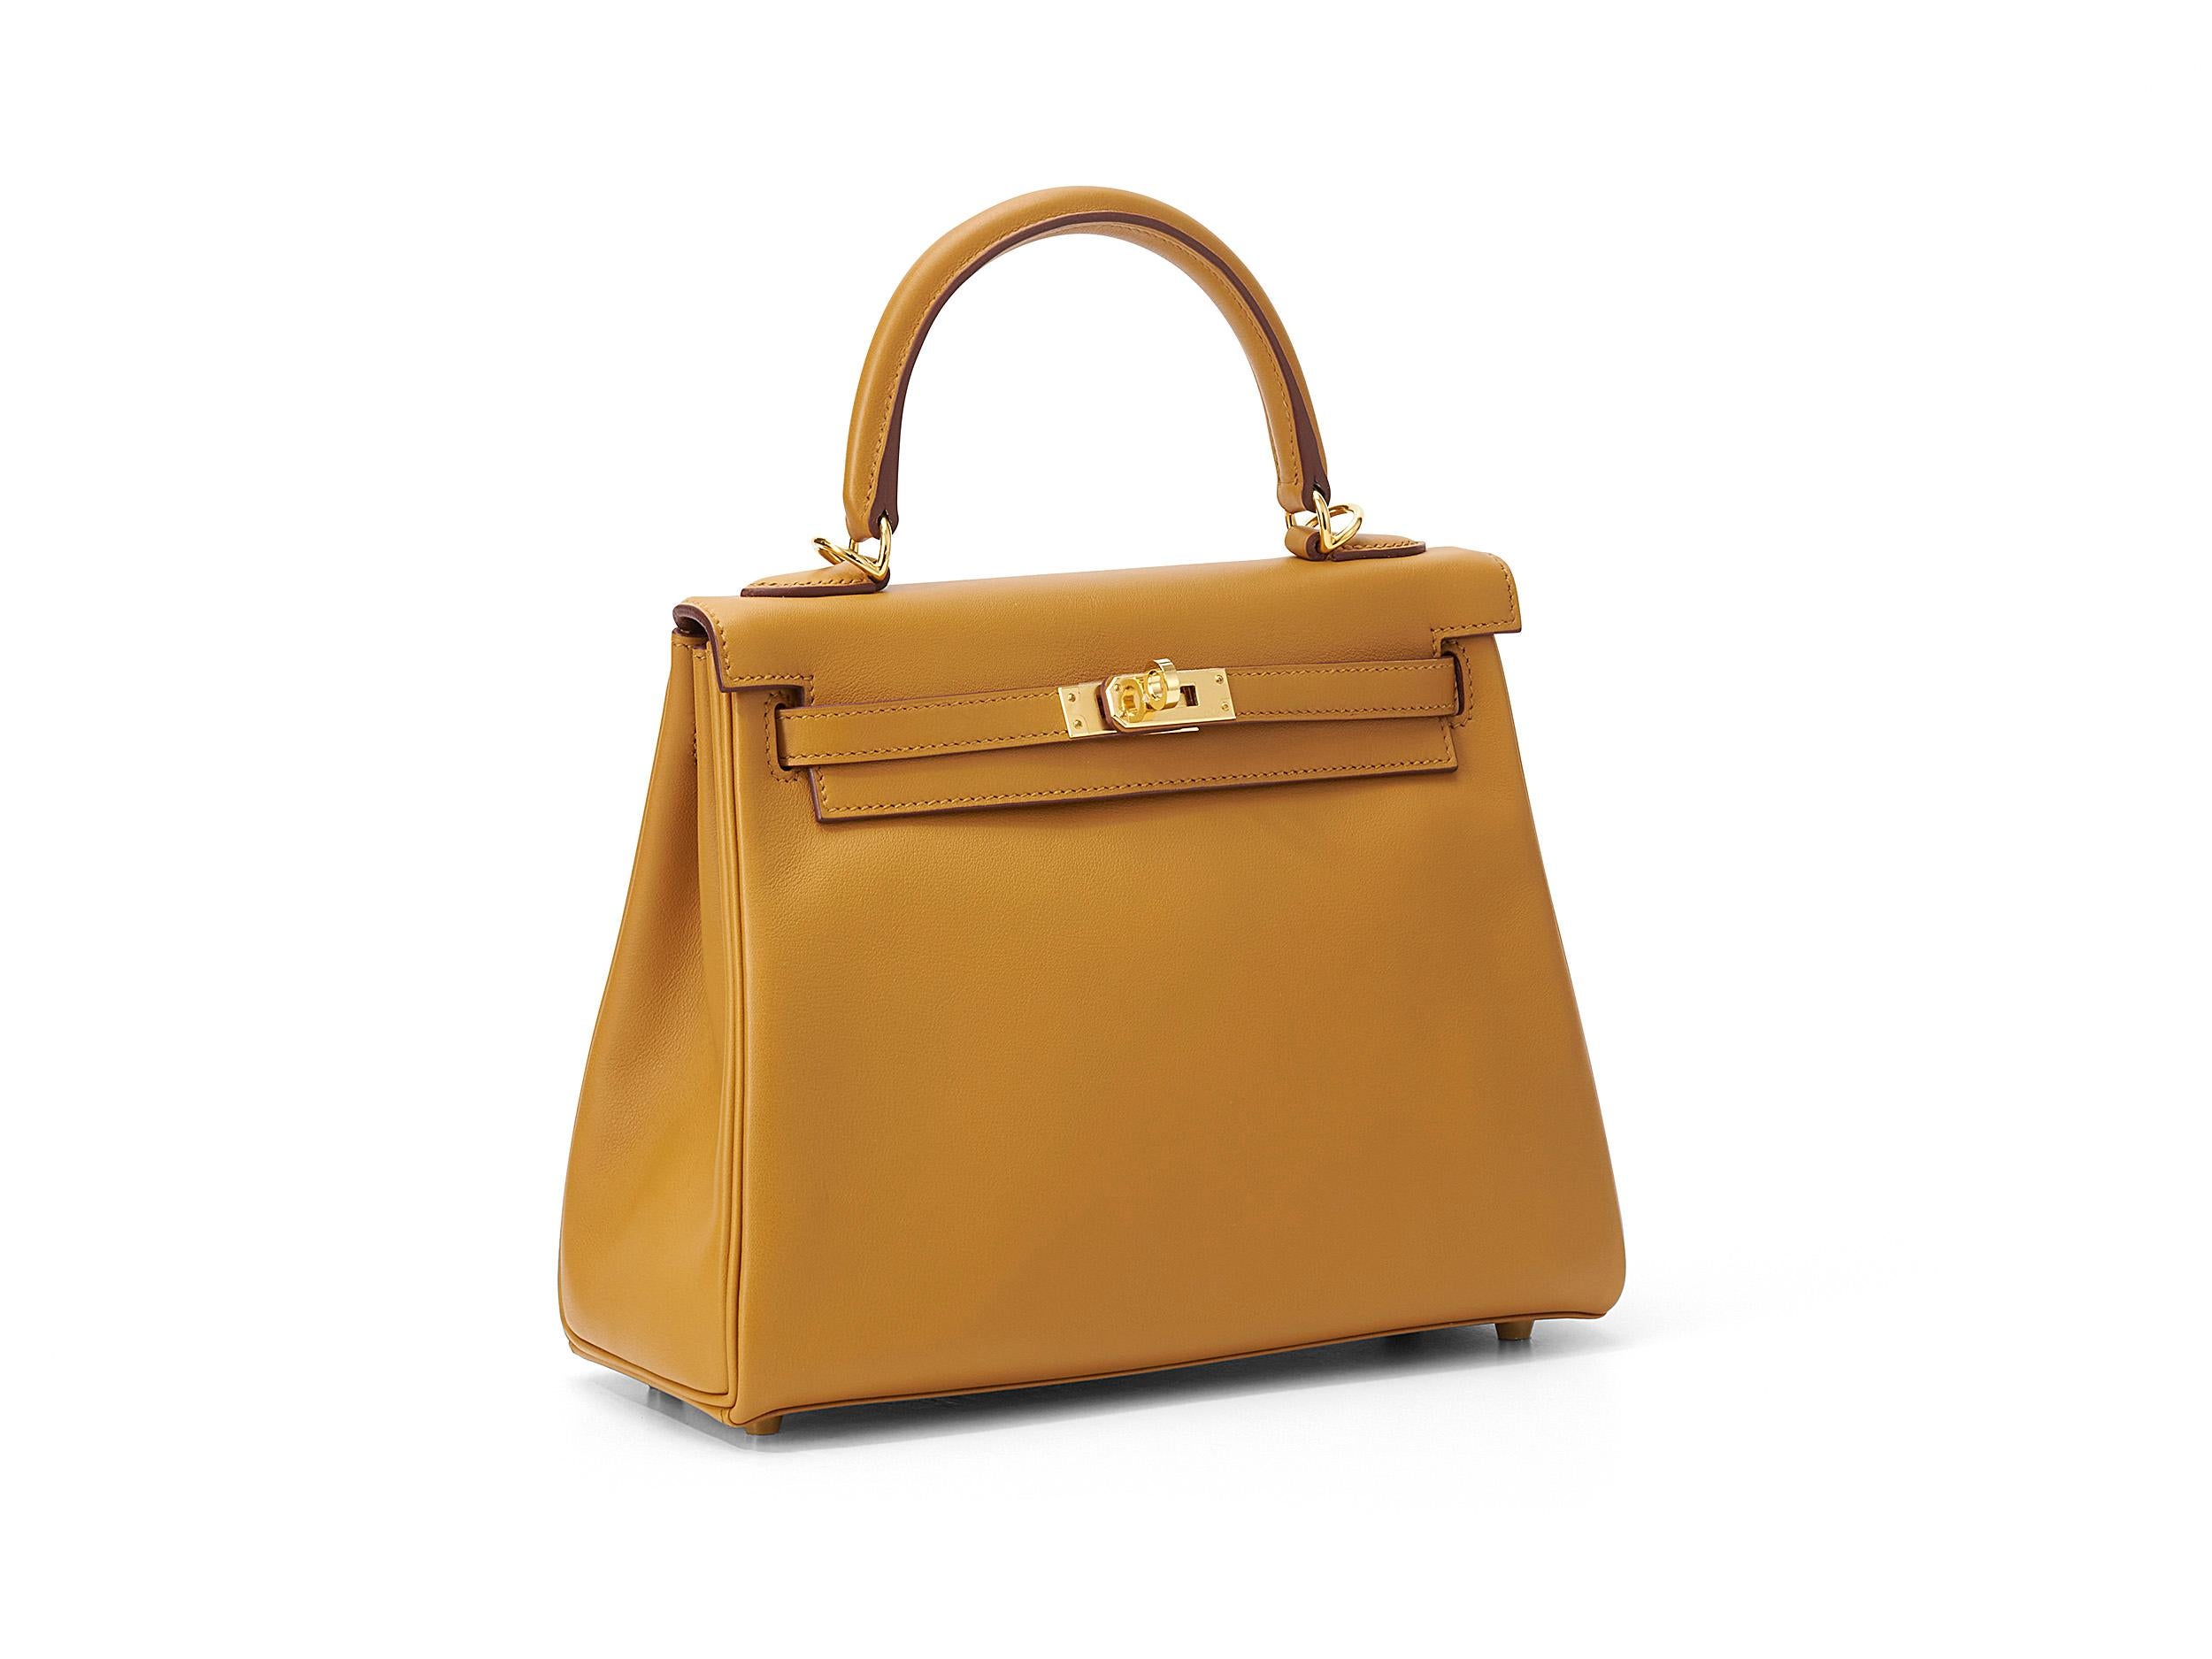 Hermès Kelly 25 in Sesam und Mauerseglerleder mit goldenen Beschlägen. Die Tasche ist ungetragen und wird als komplettes Set inklusive der Originalquittung geliefert.

Stempel Y (2020) 

